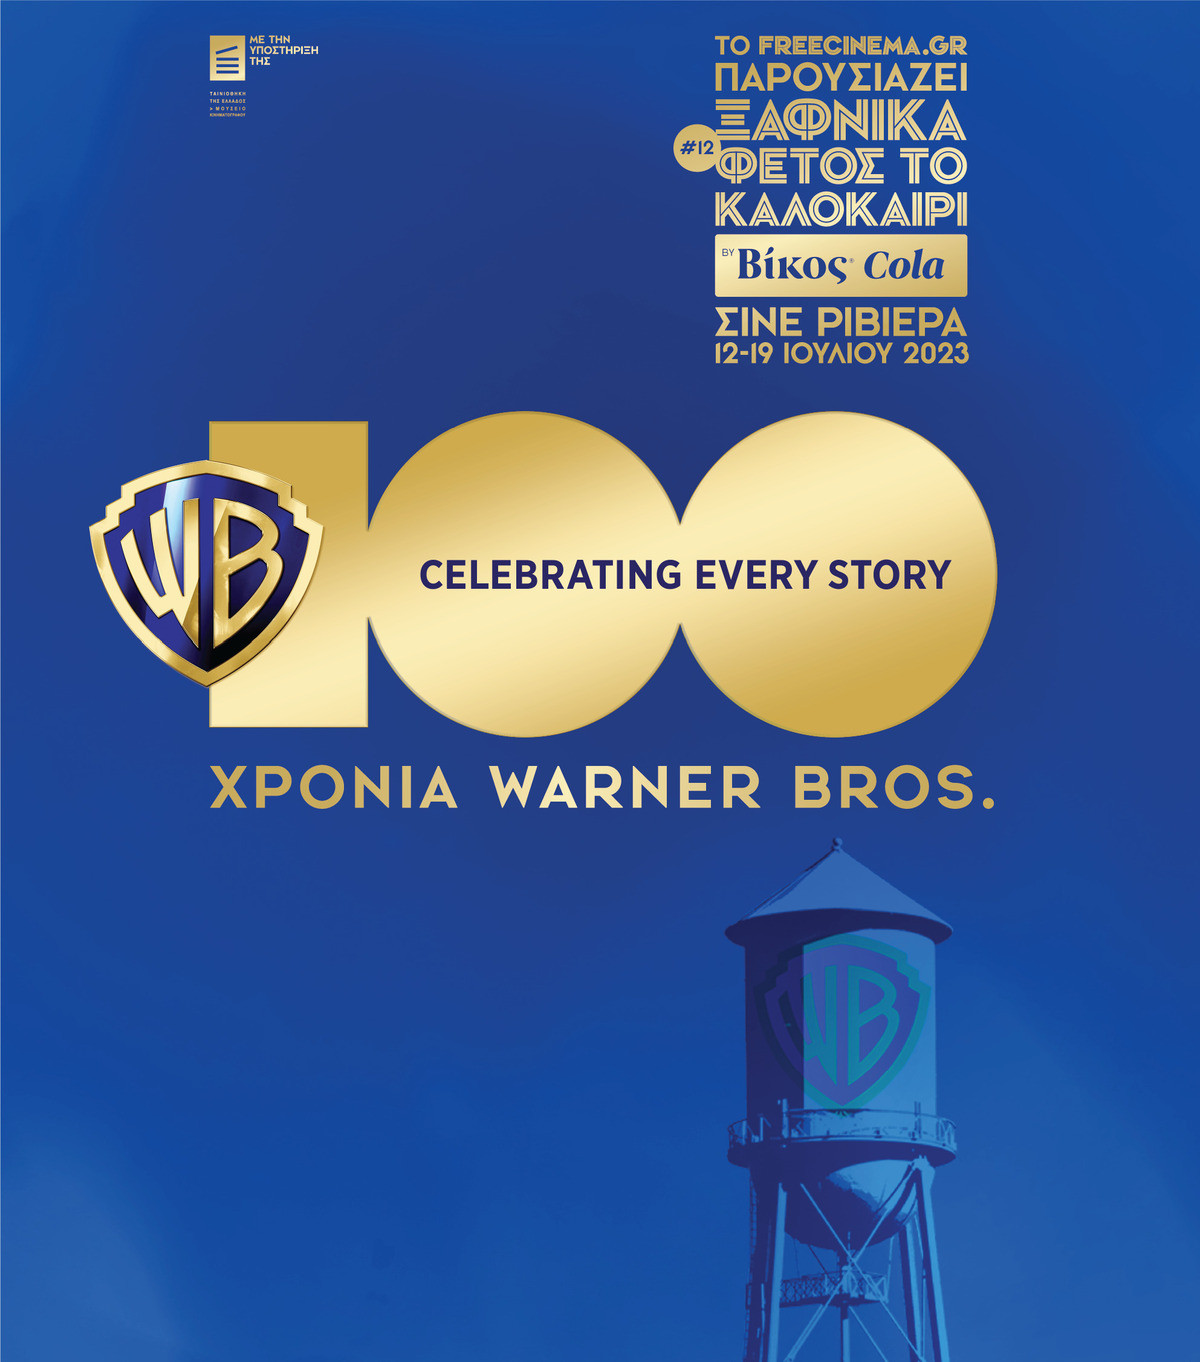 «Ξαφνικά Φέτος το Καλοκαίρι»: Αναλυτικά το φετινό πρόγραμμα με αφιέρωμα στα 100 χρόνια Warner Bros.